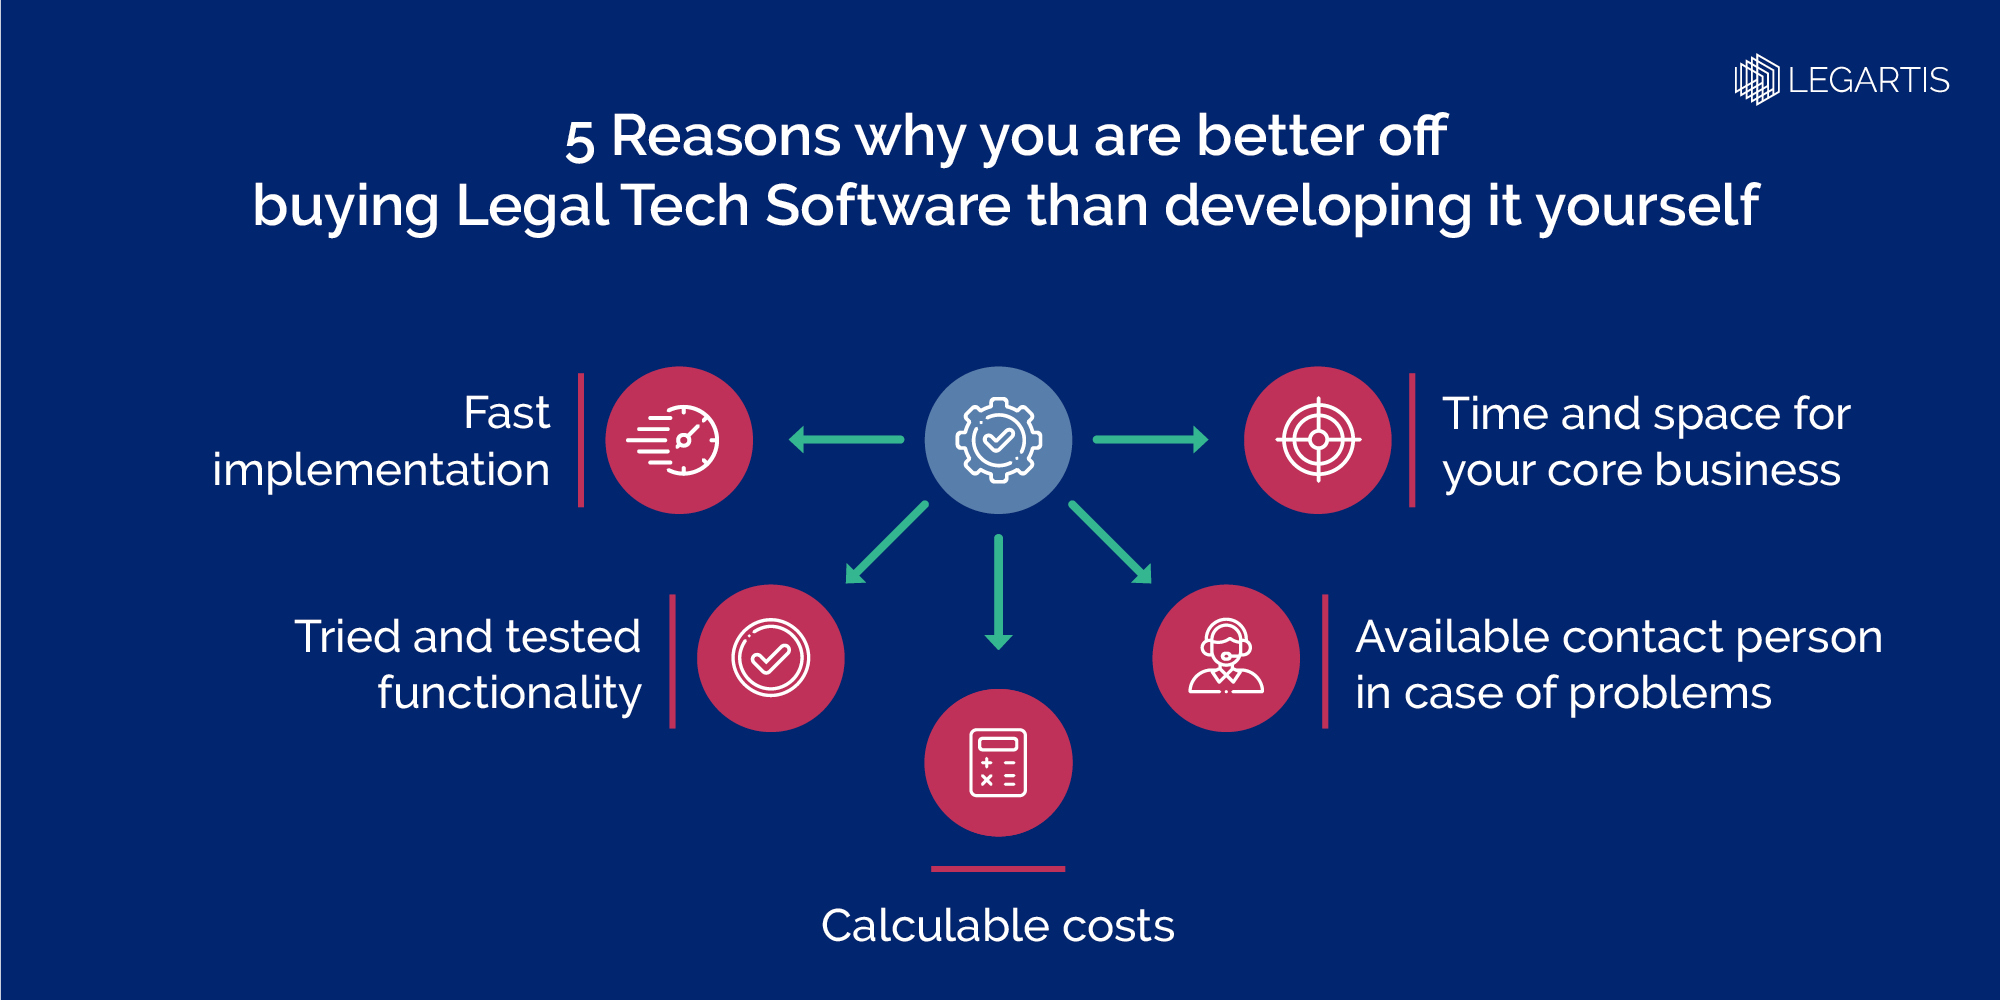 Legartis_Legal Software-Make or Buy_EN